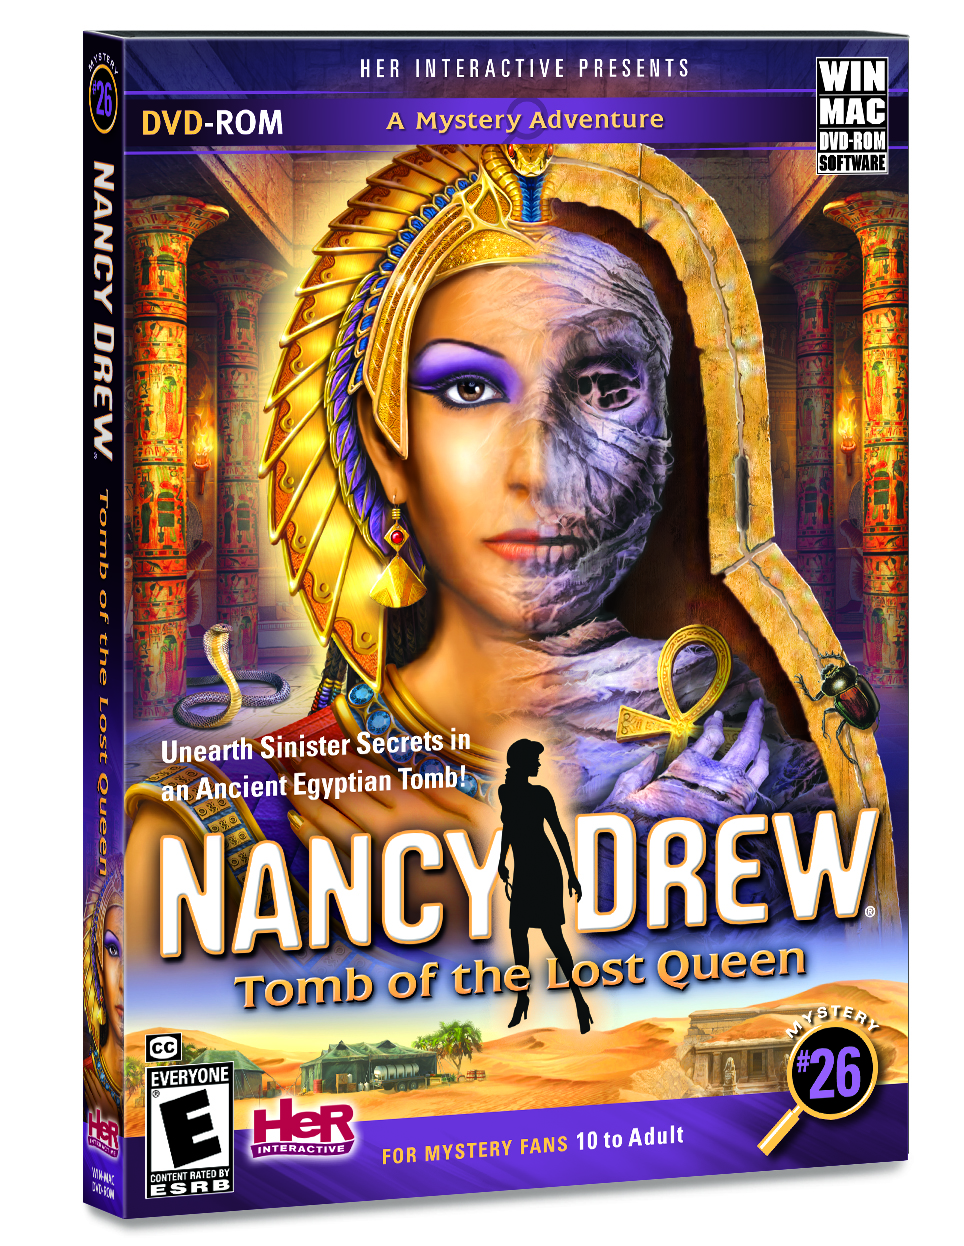 Press Release: Nancy Drew: Tomb of the Lost Queen